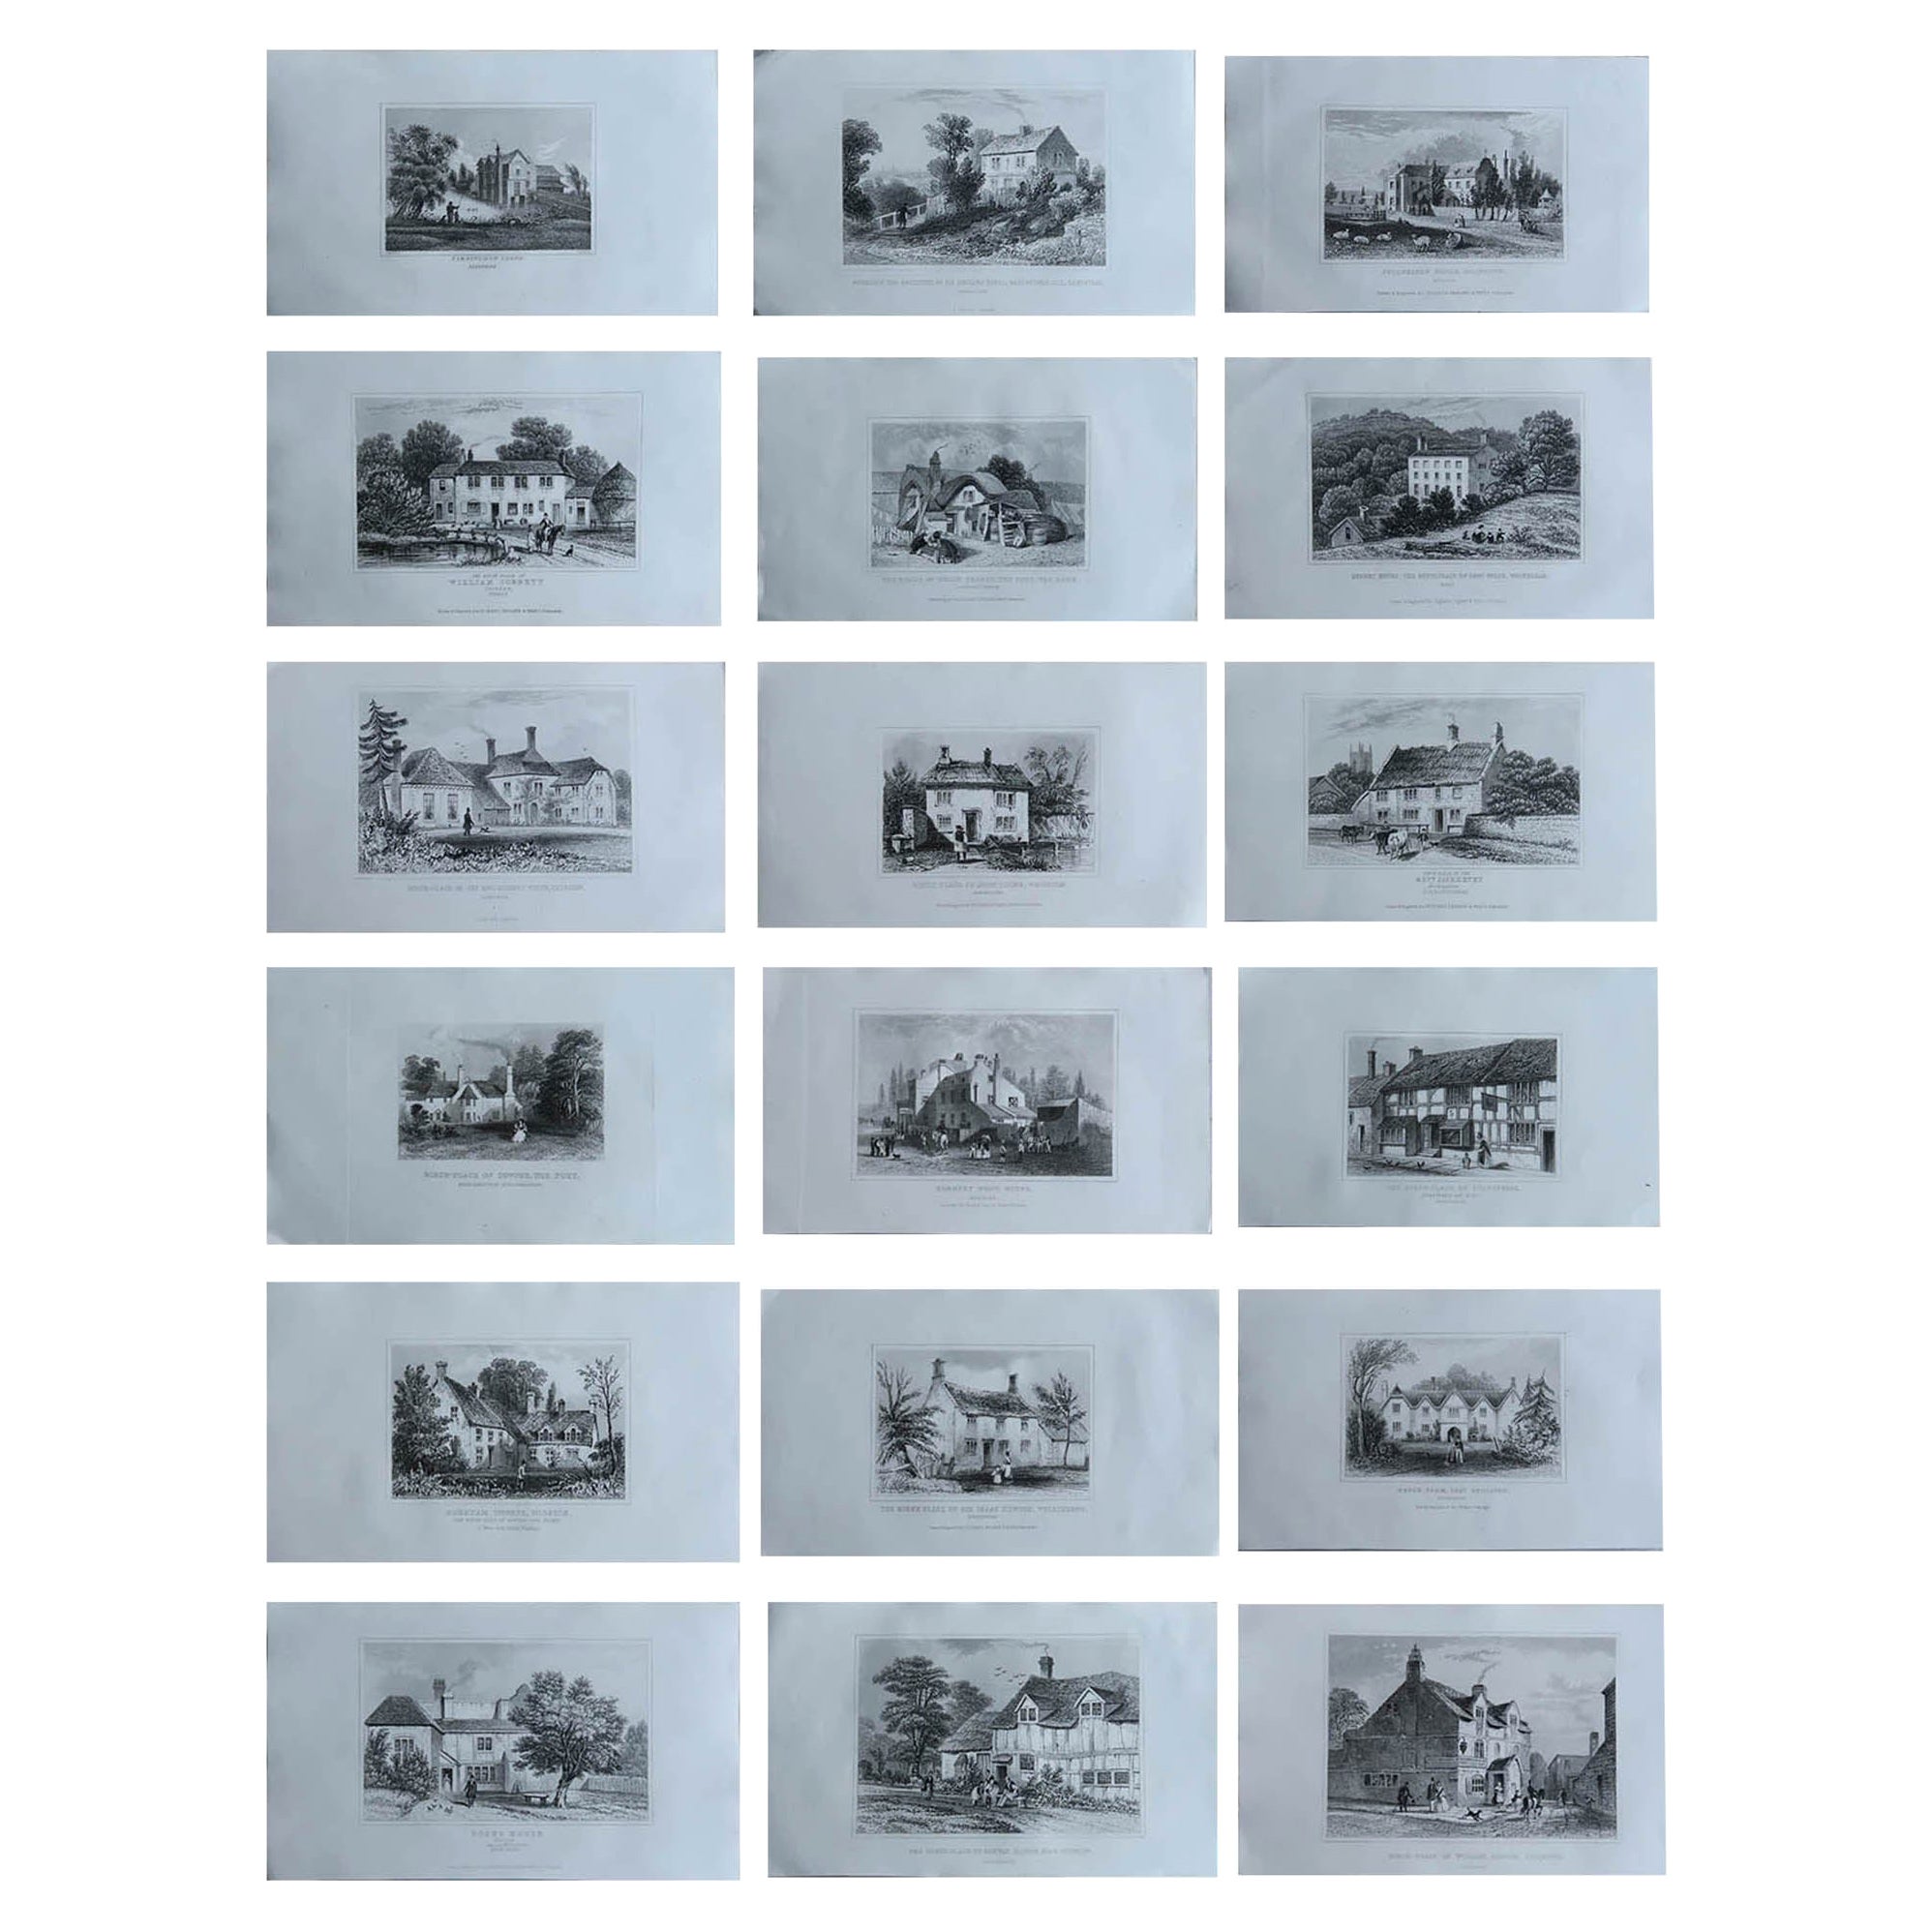 Ensemble de 18 estampes anciennes de cottages de campagne anglaises, vers 1840